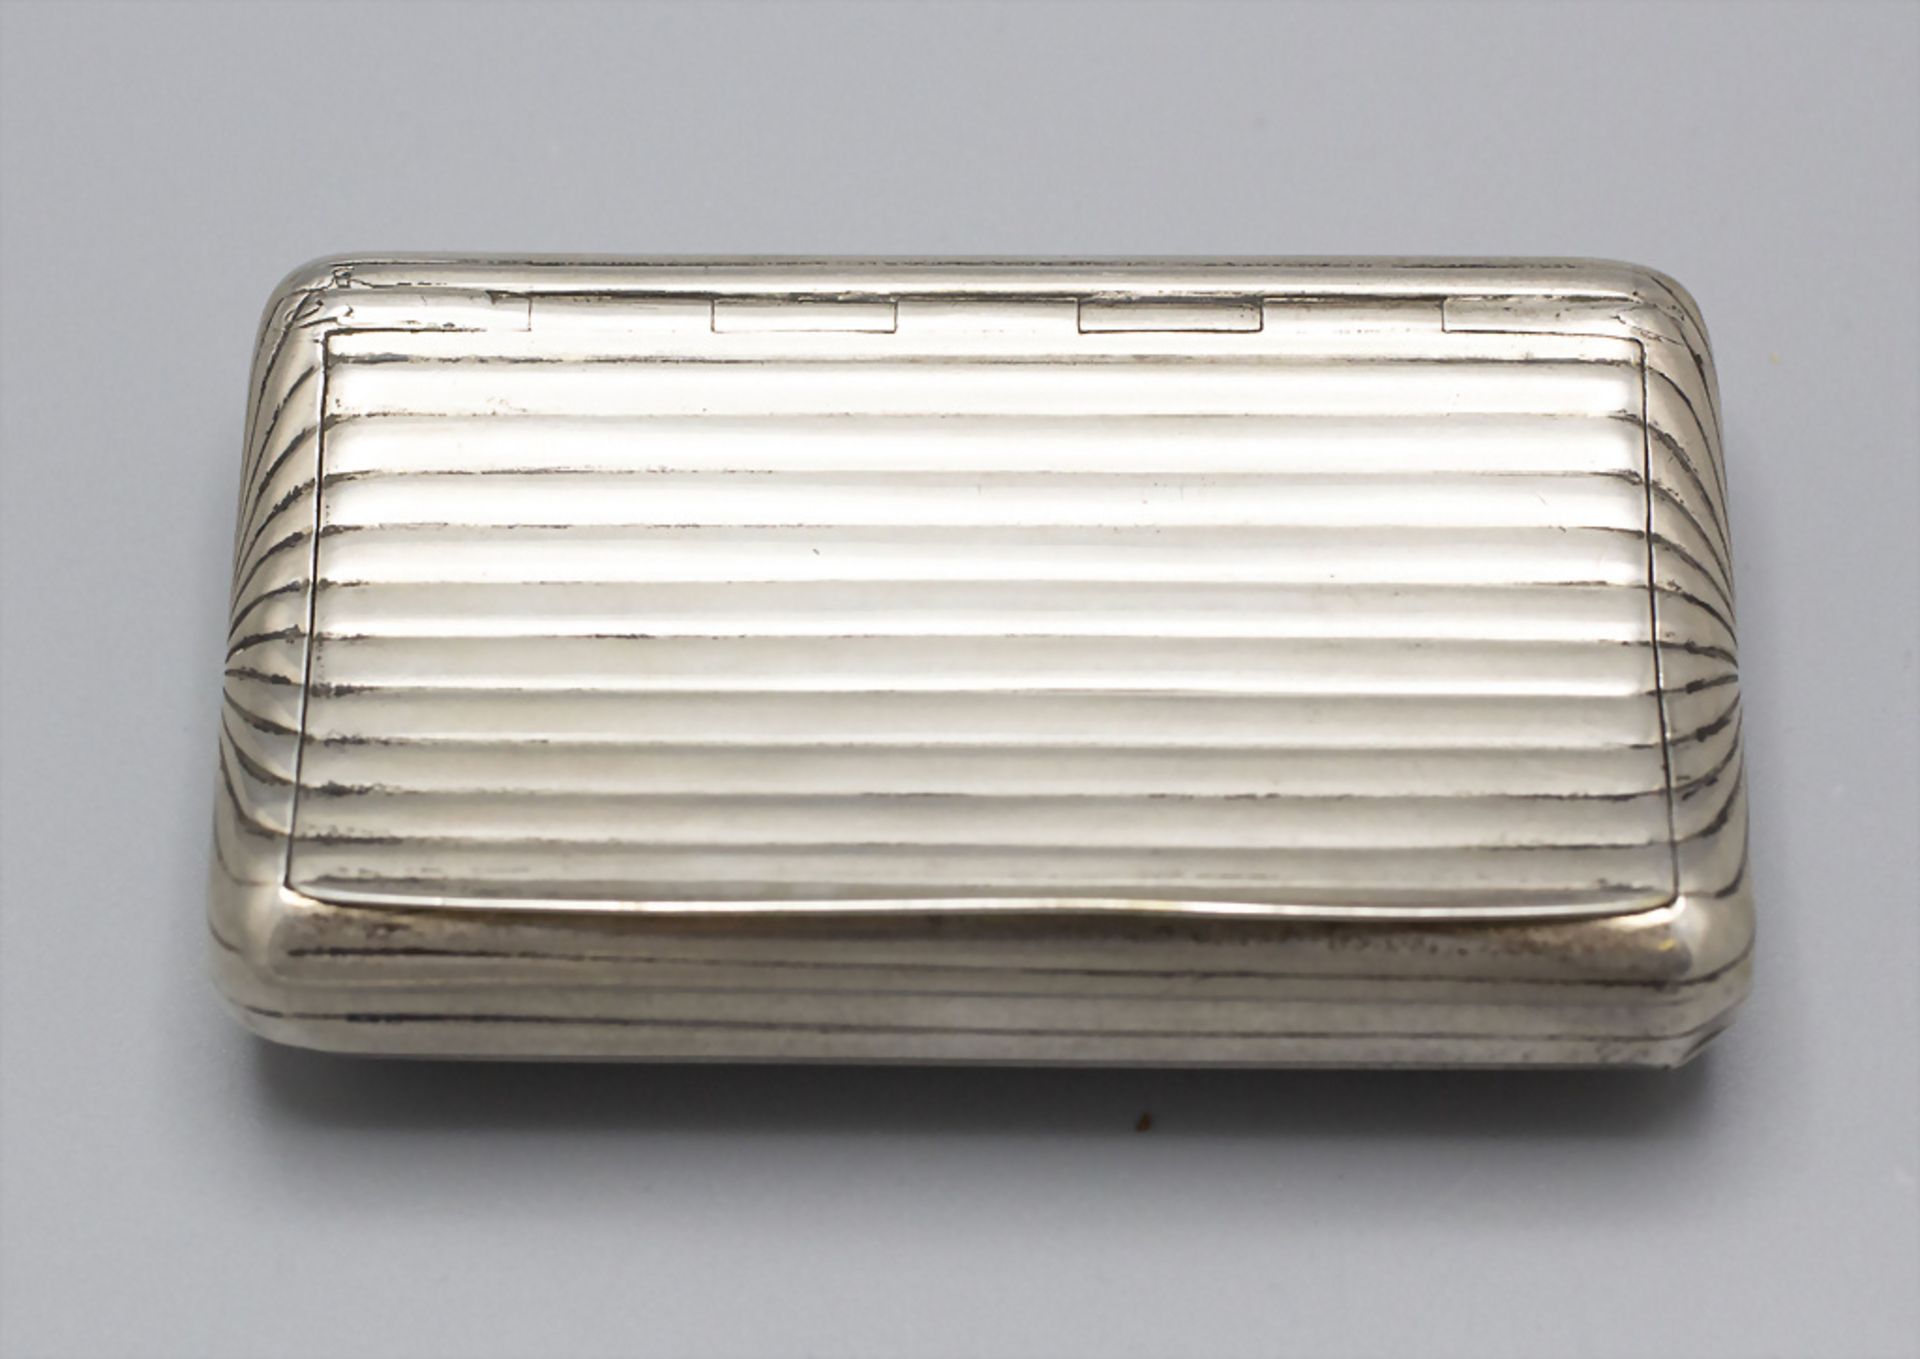 Tabatiere / Schnupftabakdose / A silver snuff box, Désirée-Toussaint Legrand, Paris, 1819-34 - Image 2 of 5